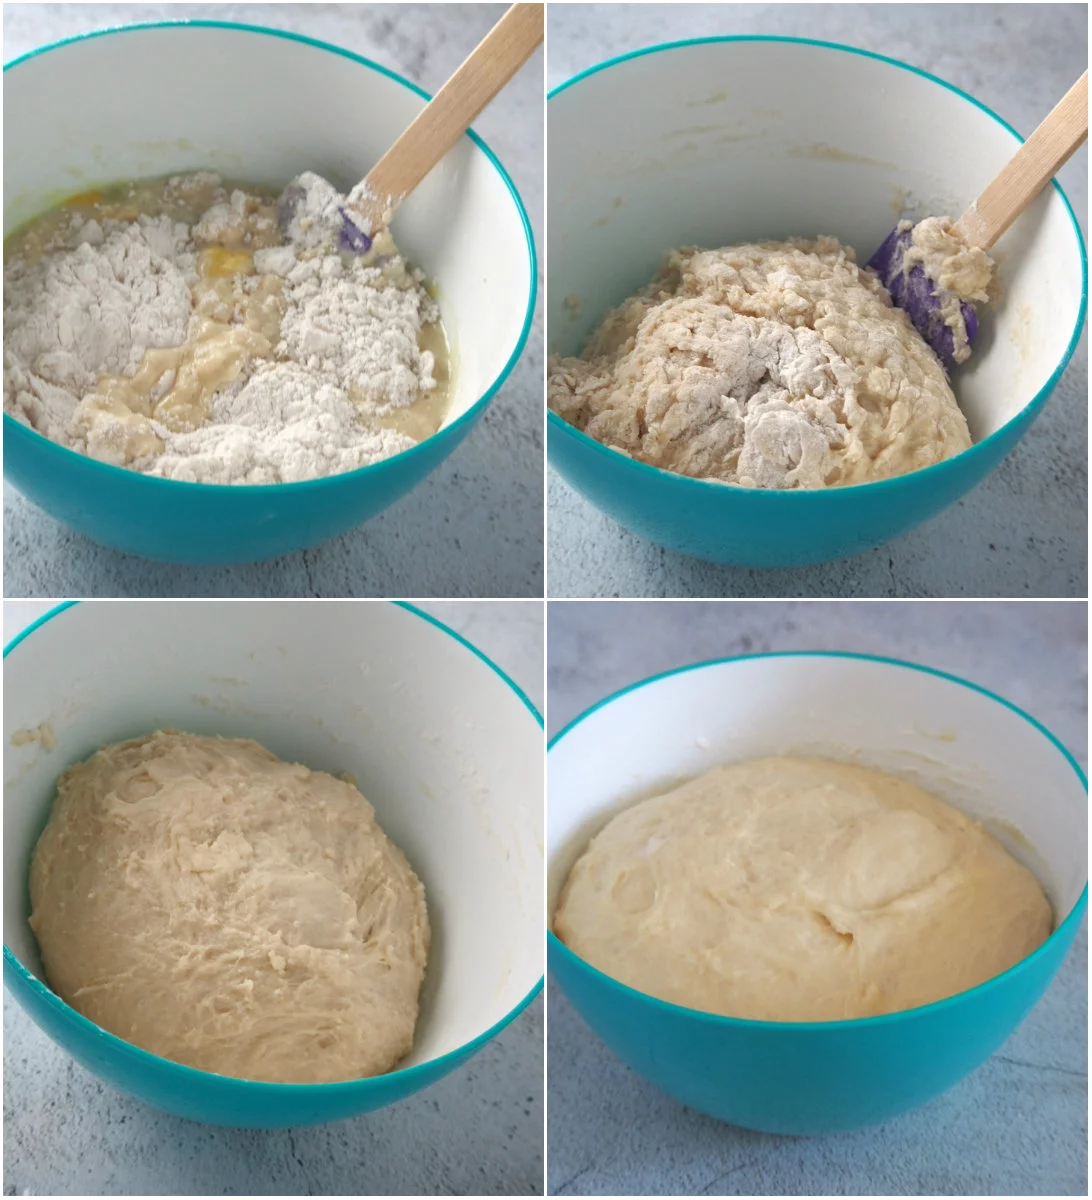 colagem mostrando o processo de fazer a massa para pan de leche.